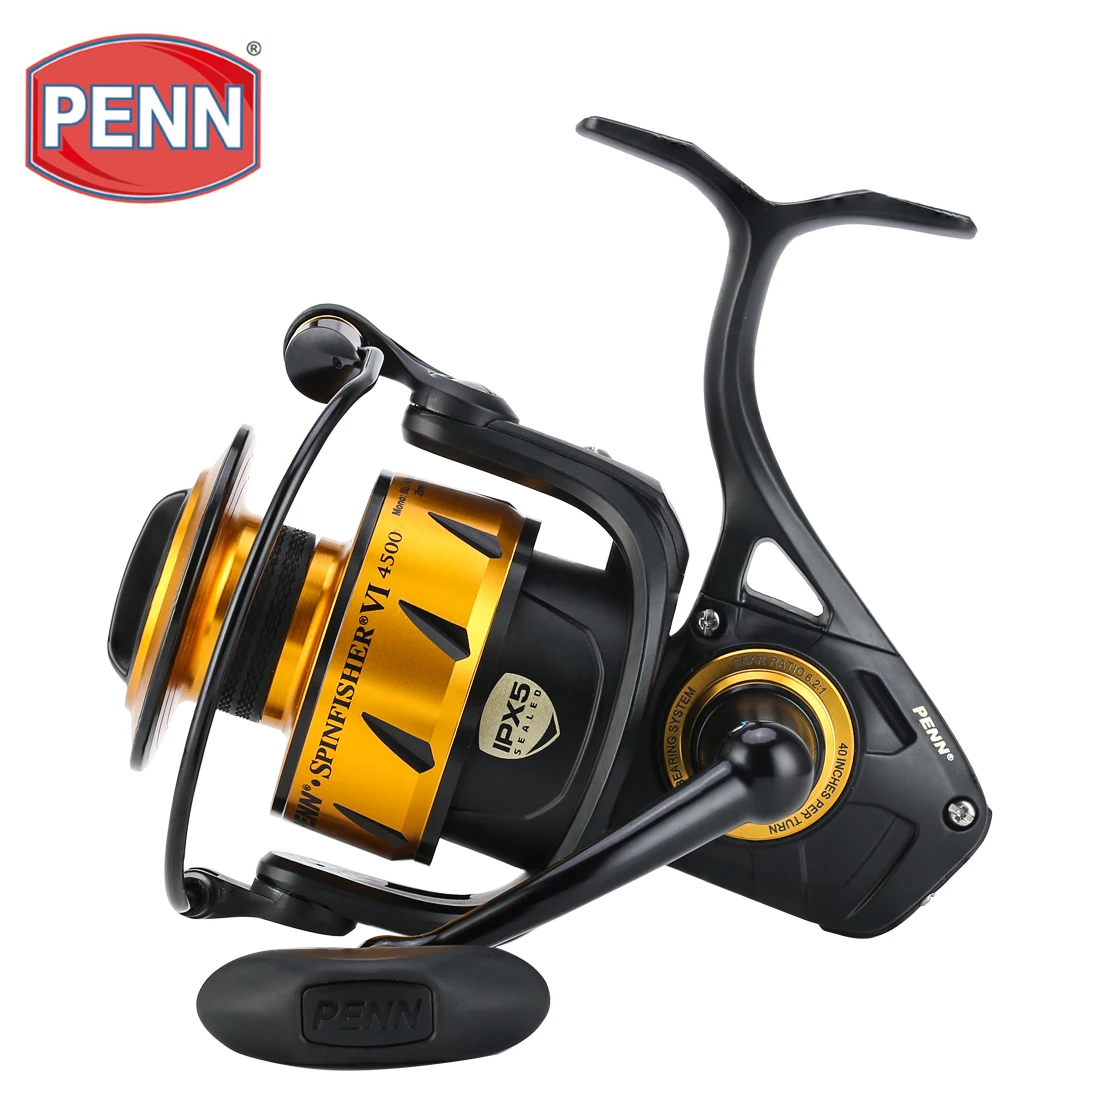 Penn Spinfisher VI Spinning 2500-10500 IPX5 Full Metal Body Reel NEW 2019 